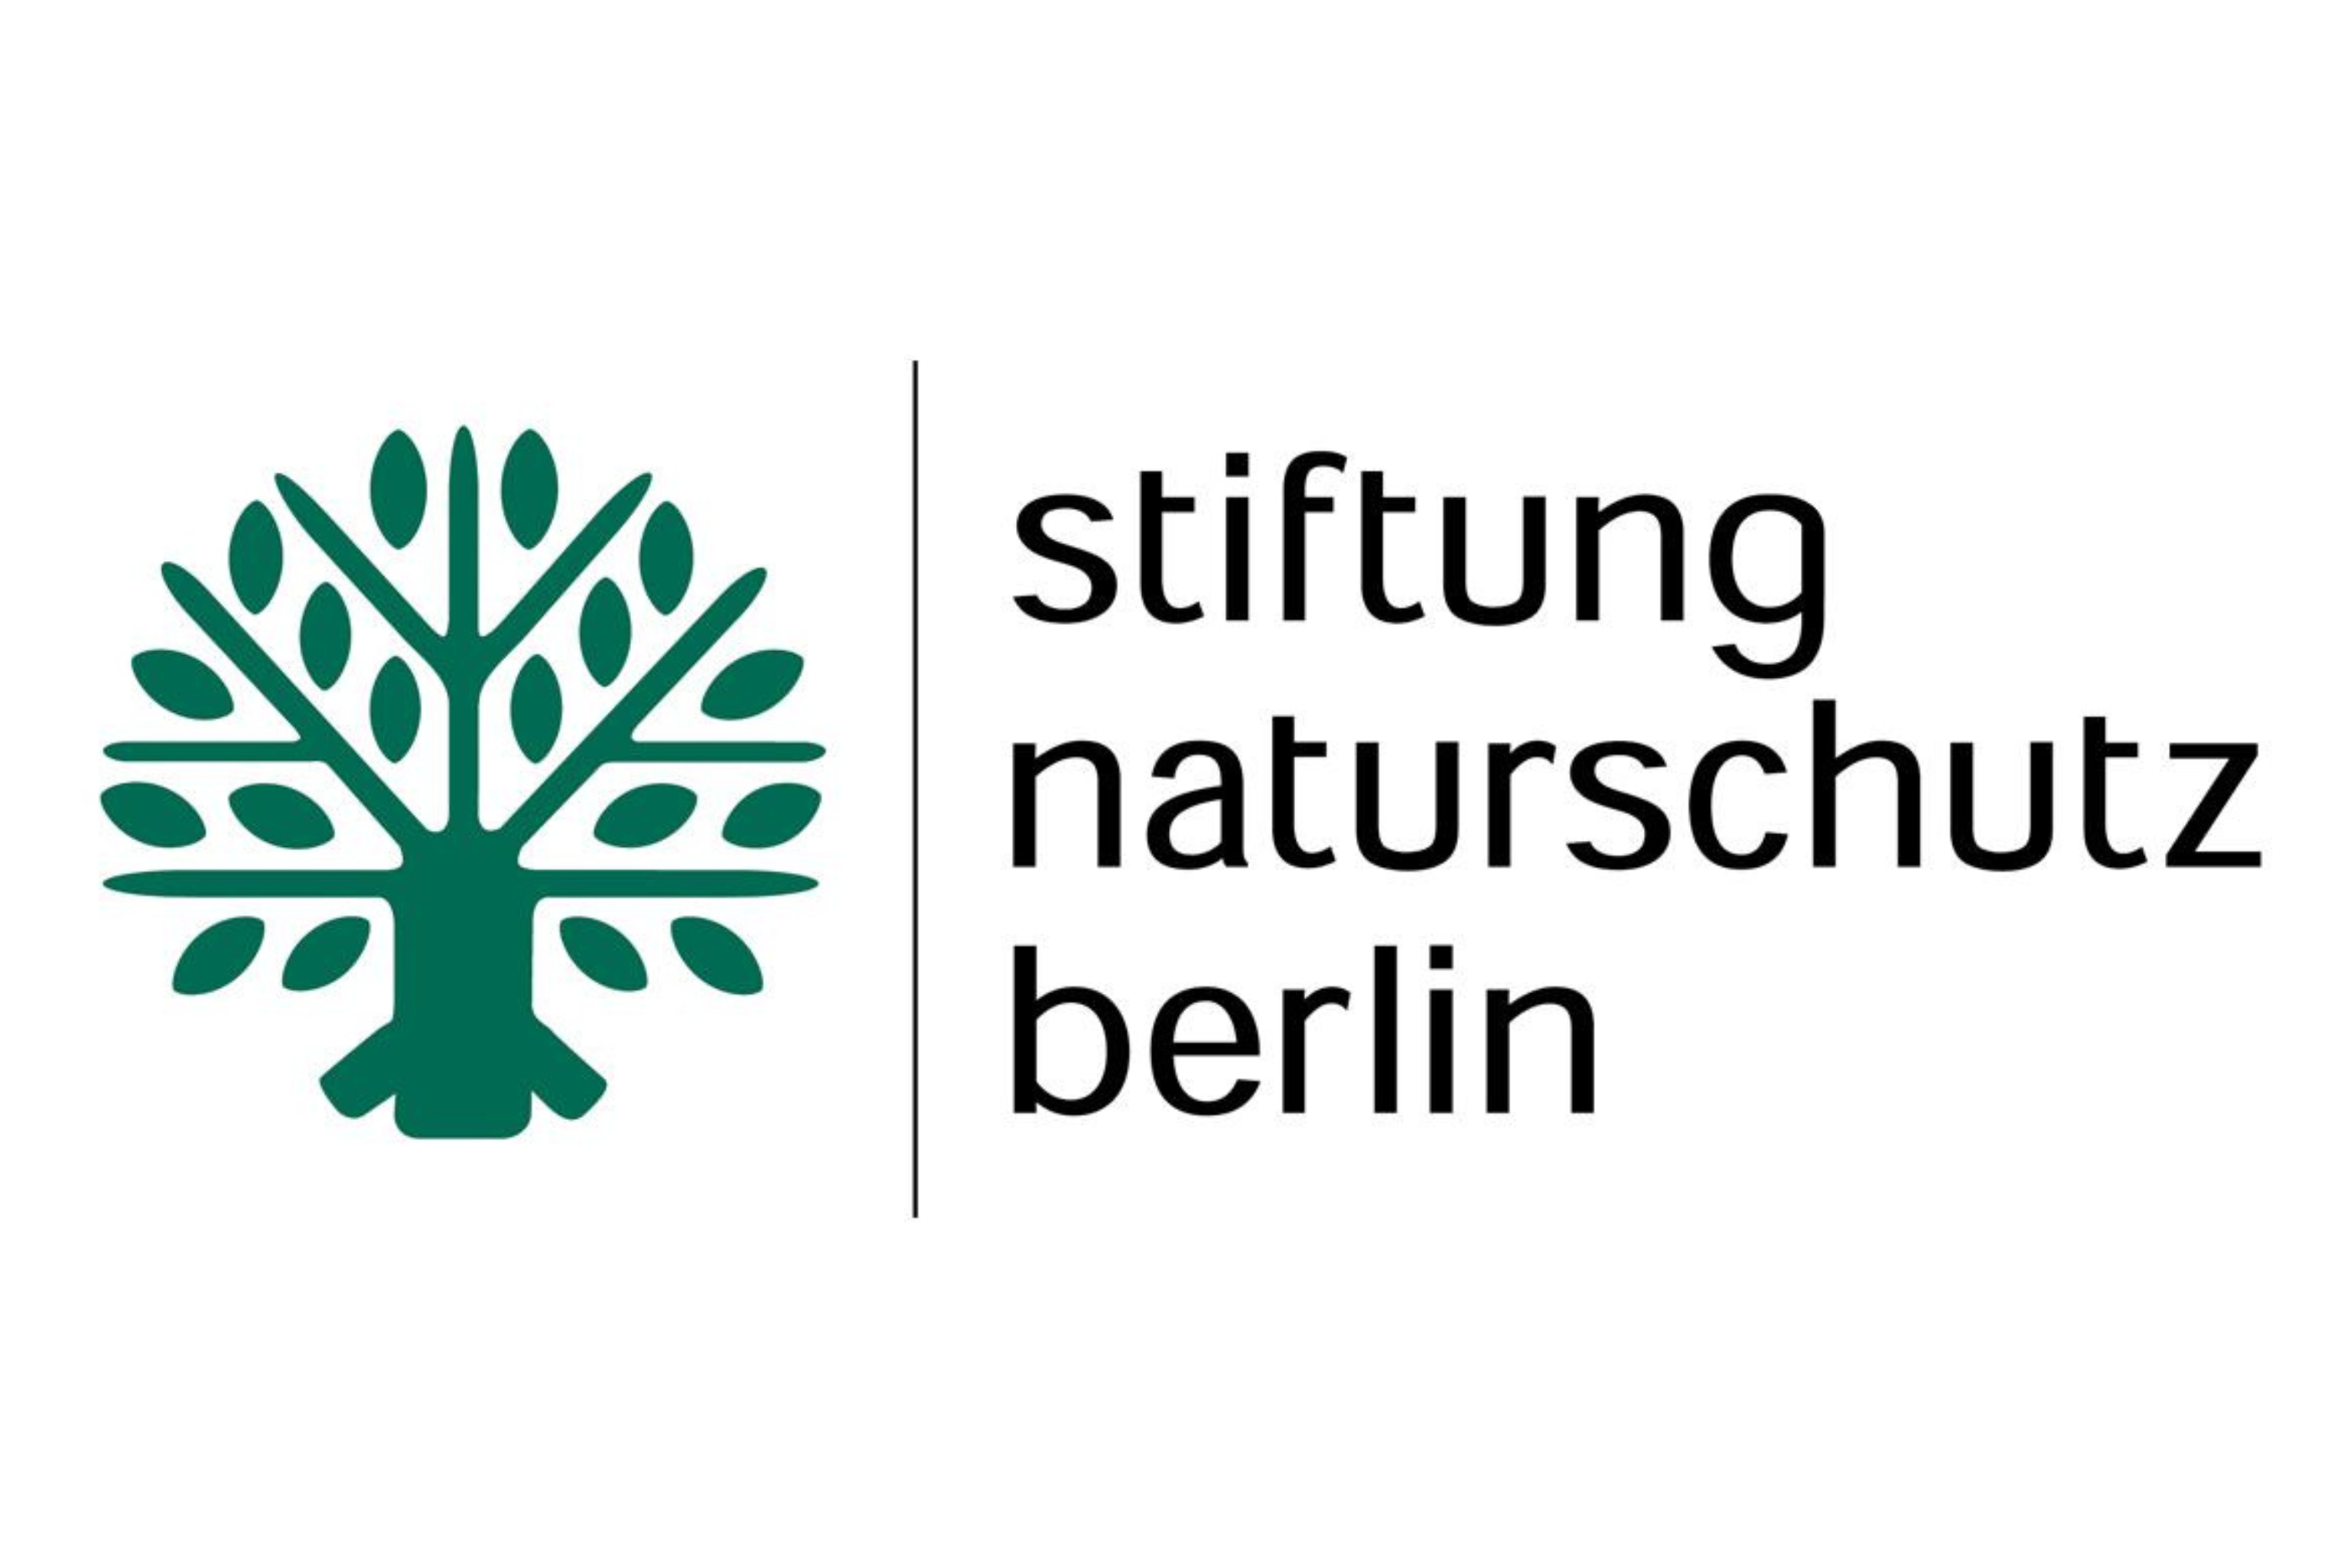 Logo Stiftung Naturschutz Berlin